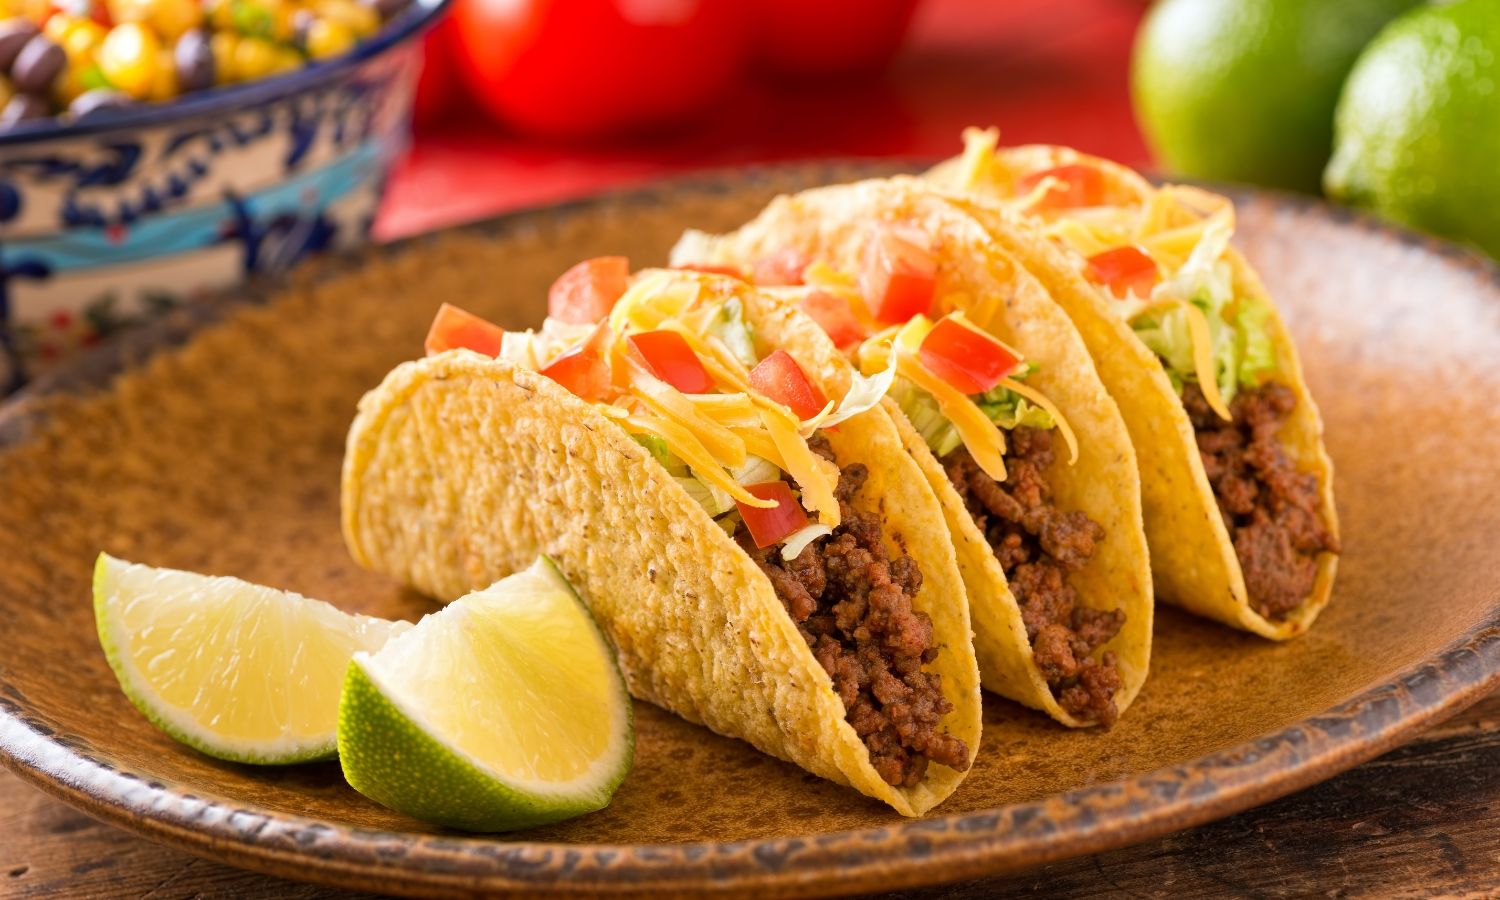 Brief History of Tacos